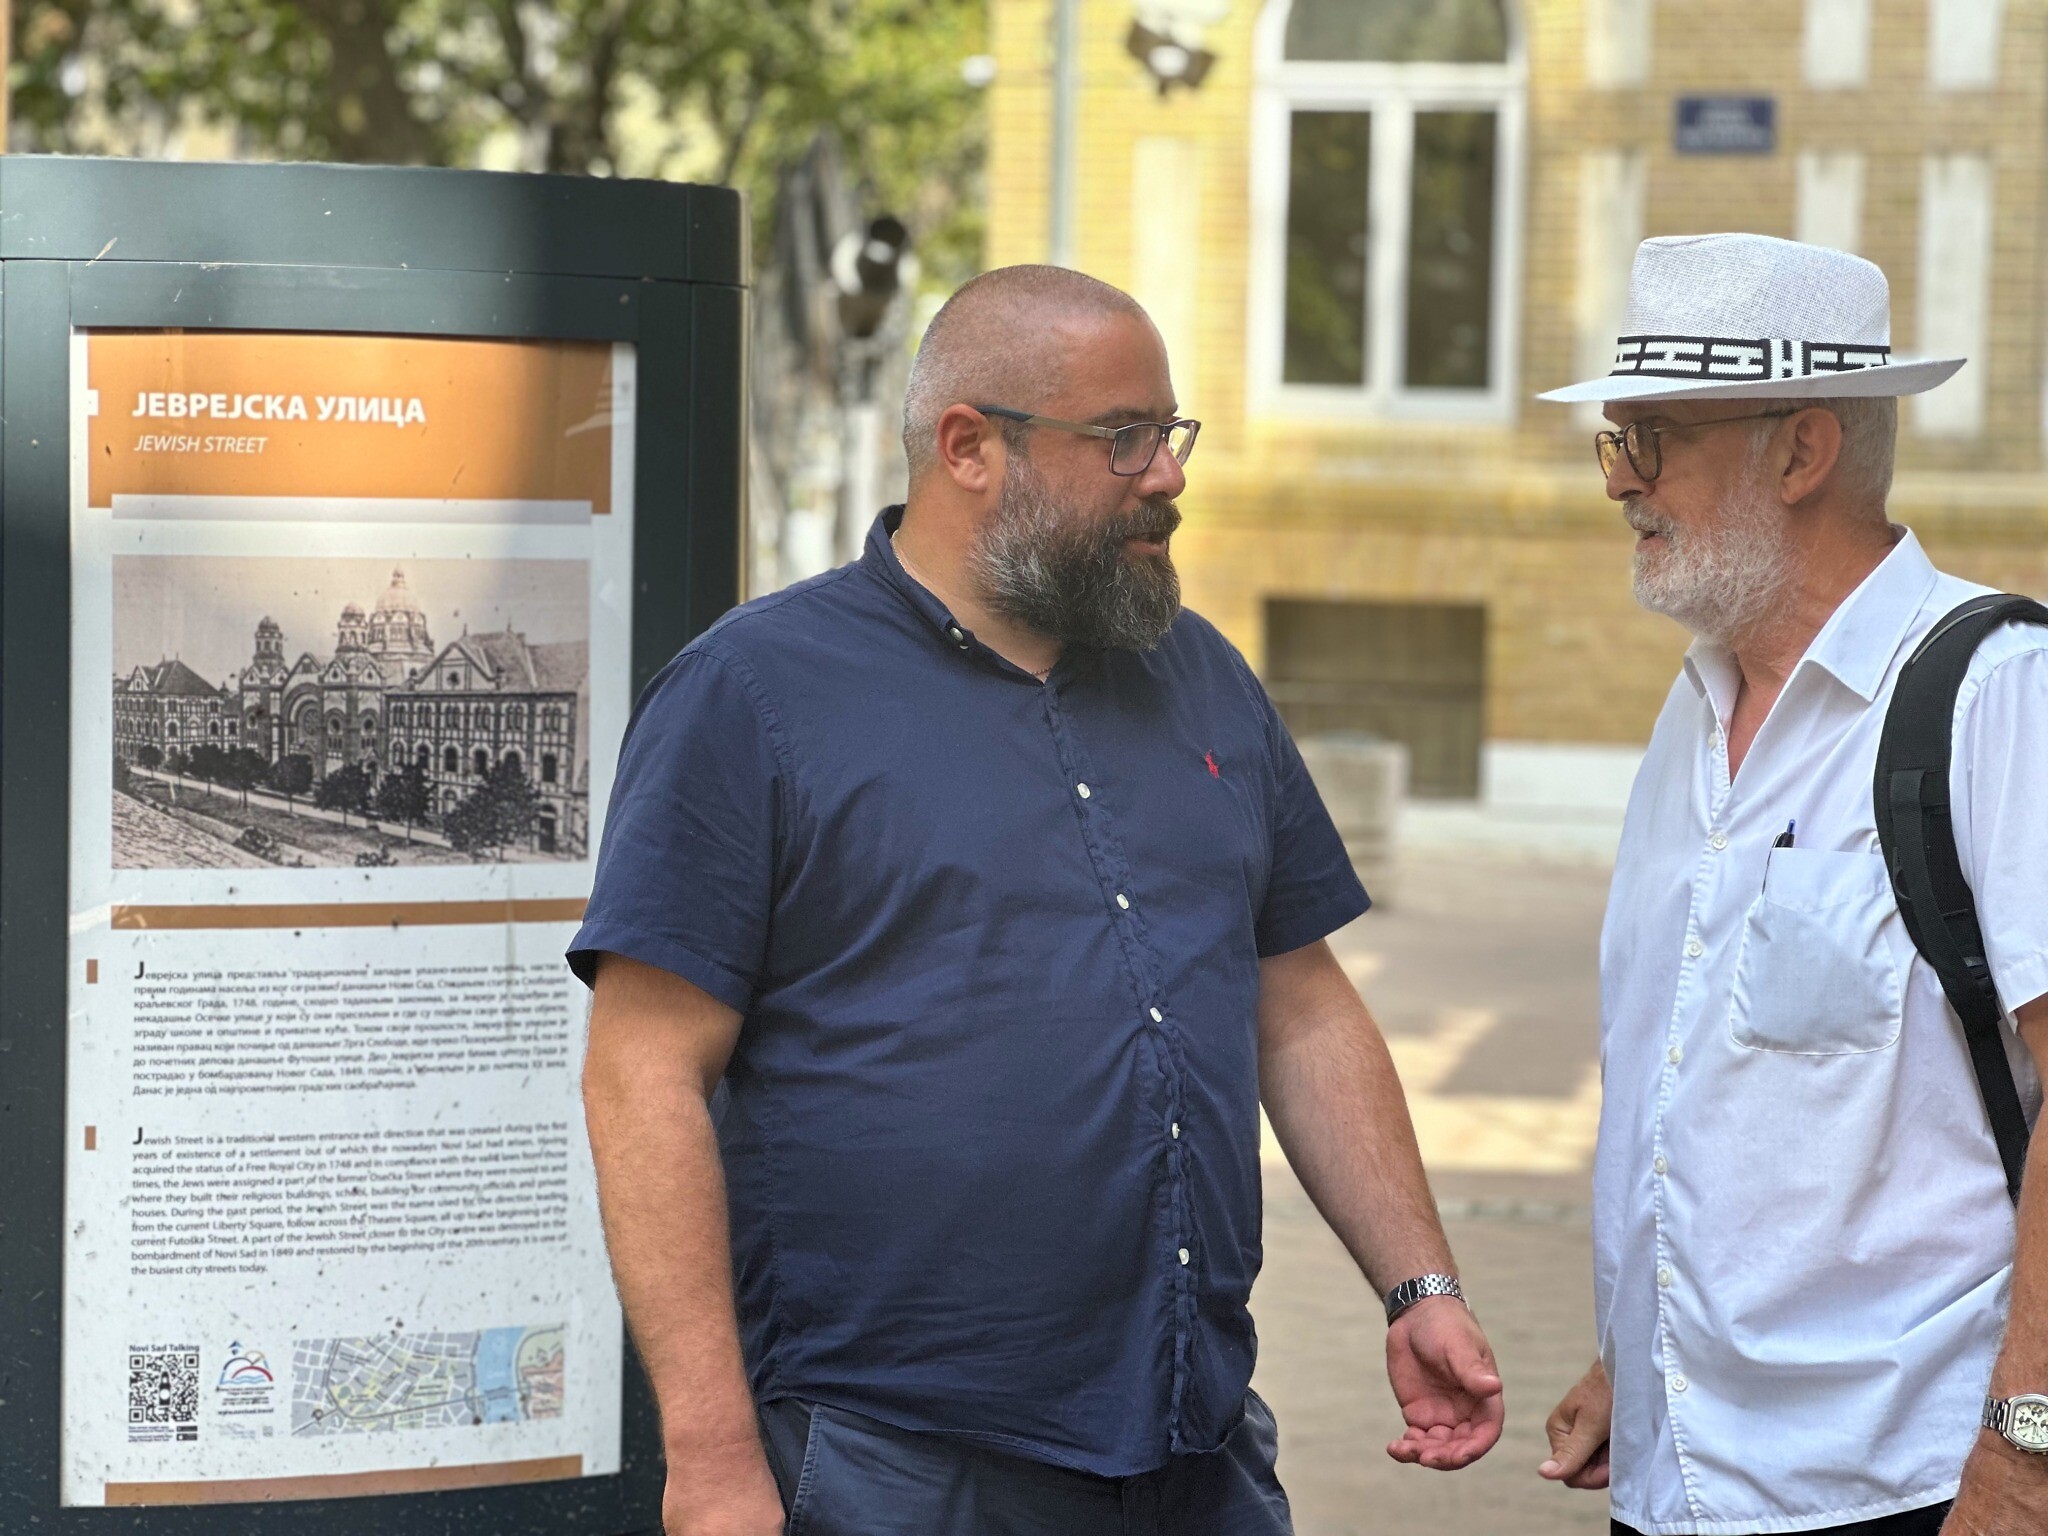 Ladislav Trajer, à gauche, et Mirko Štark, les deux principaux dirigeants de la communauté juive de Novi Sad, en Serbie, discutent juste devant l'entrée de leur synagogue. (Crédit : Larry Luxner/JTA)